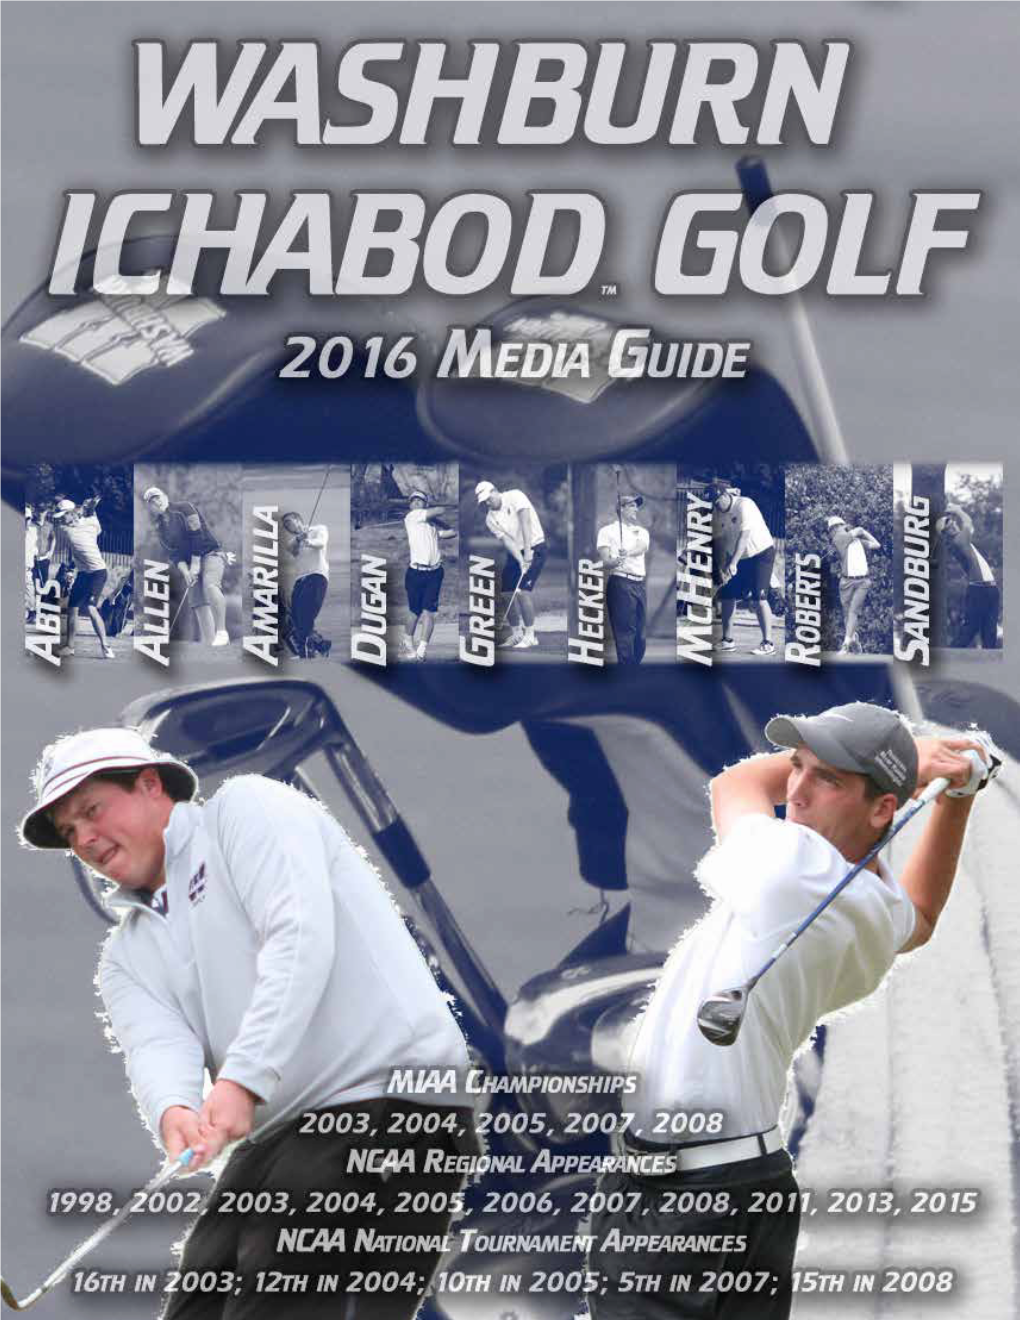 2015-16 Washburn Ichabod Golf Schedule/Results Dates Tournament Site Host Result Sept